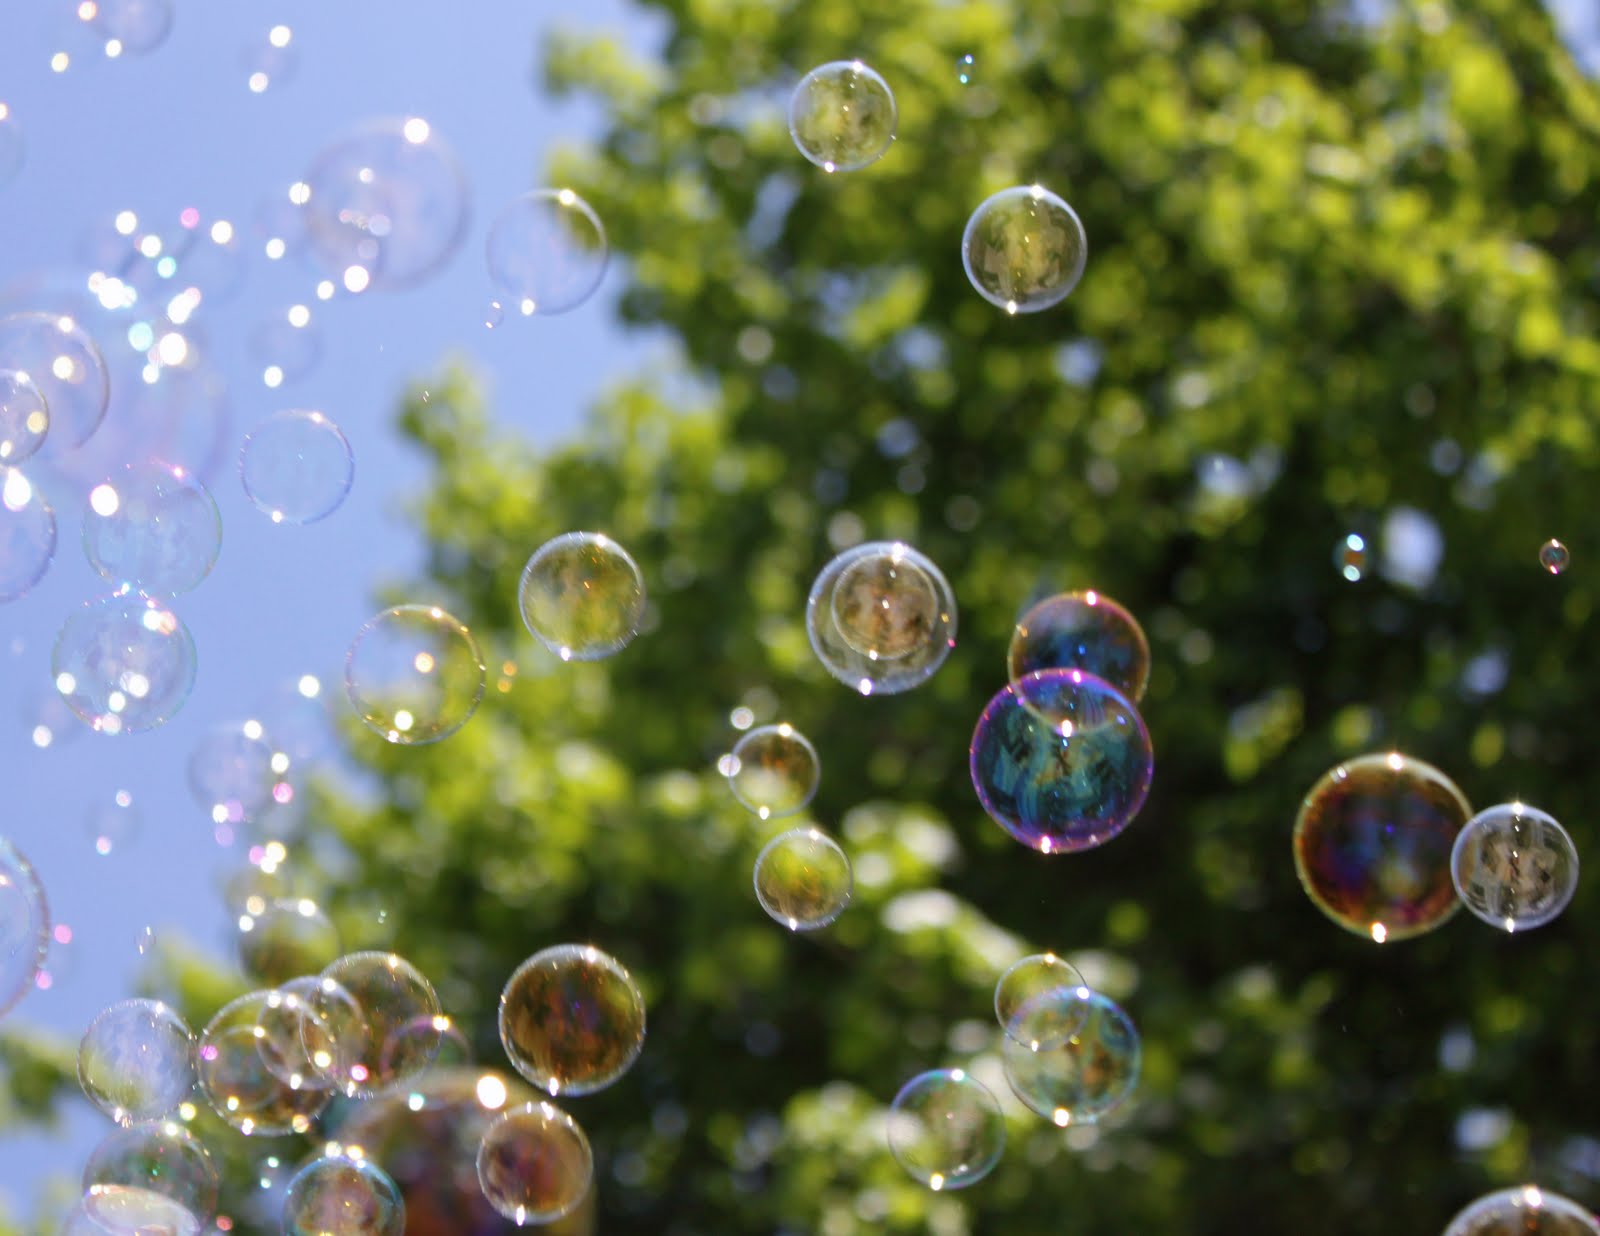 Bubbls